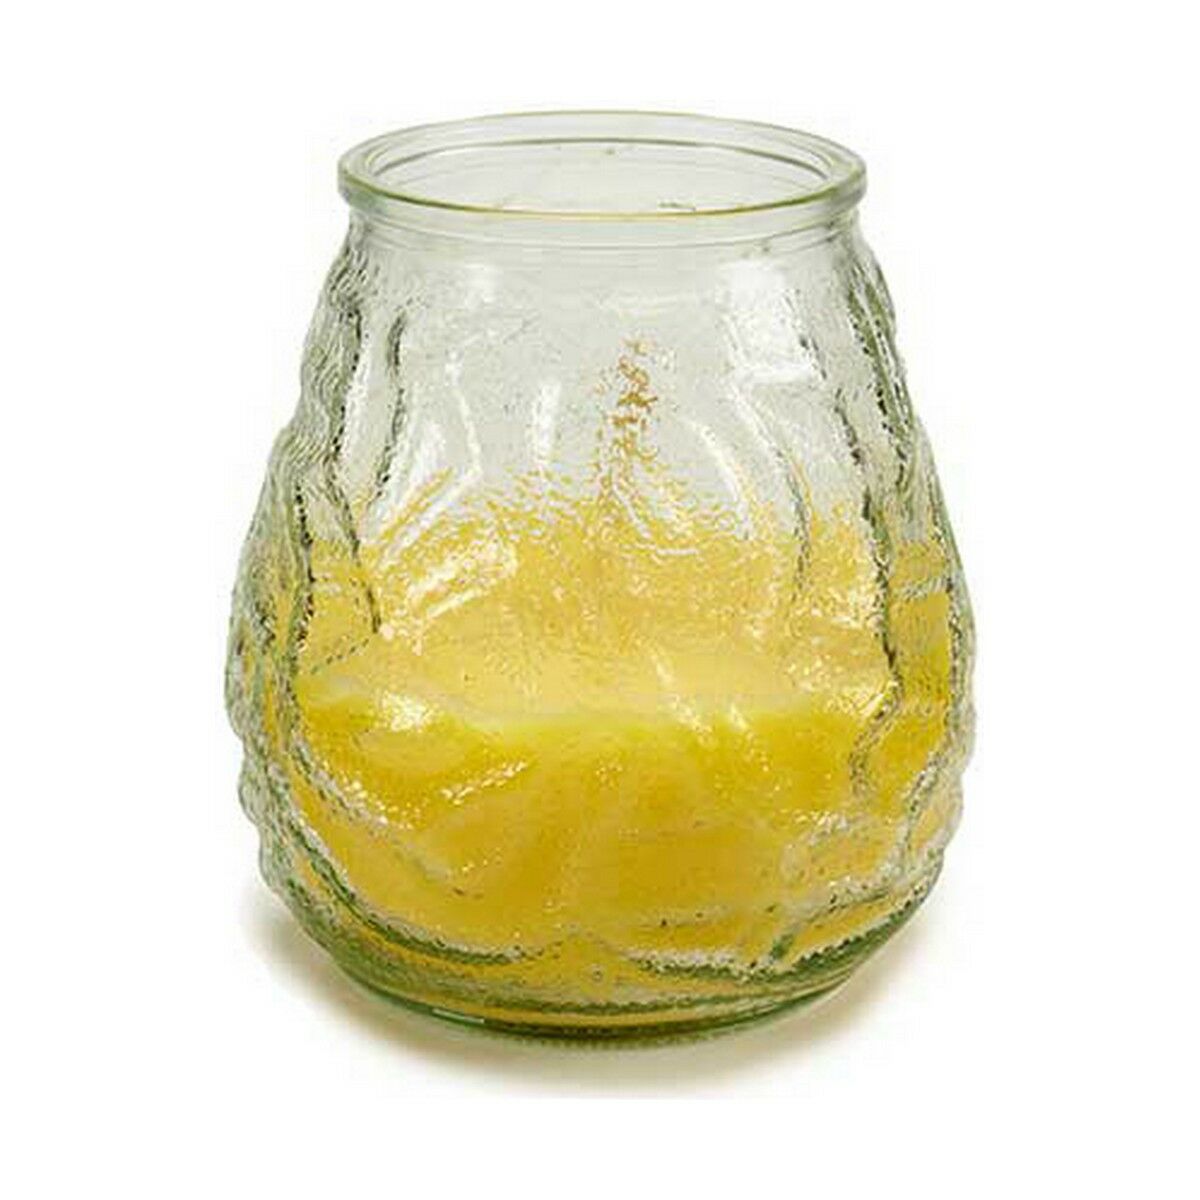 Geurkaars citronela - 6 stuks